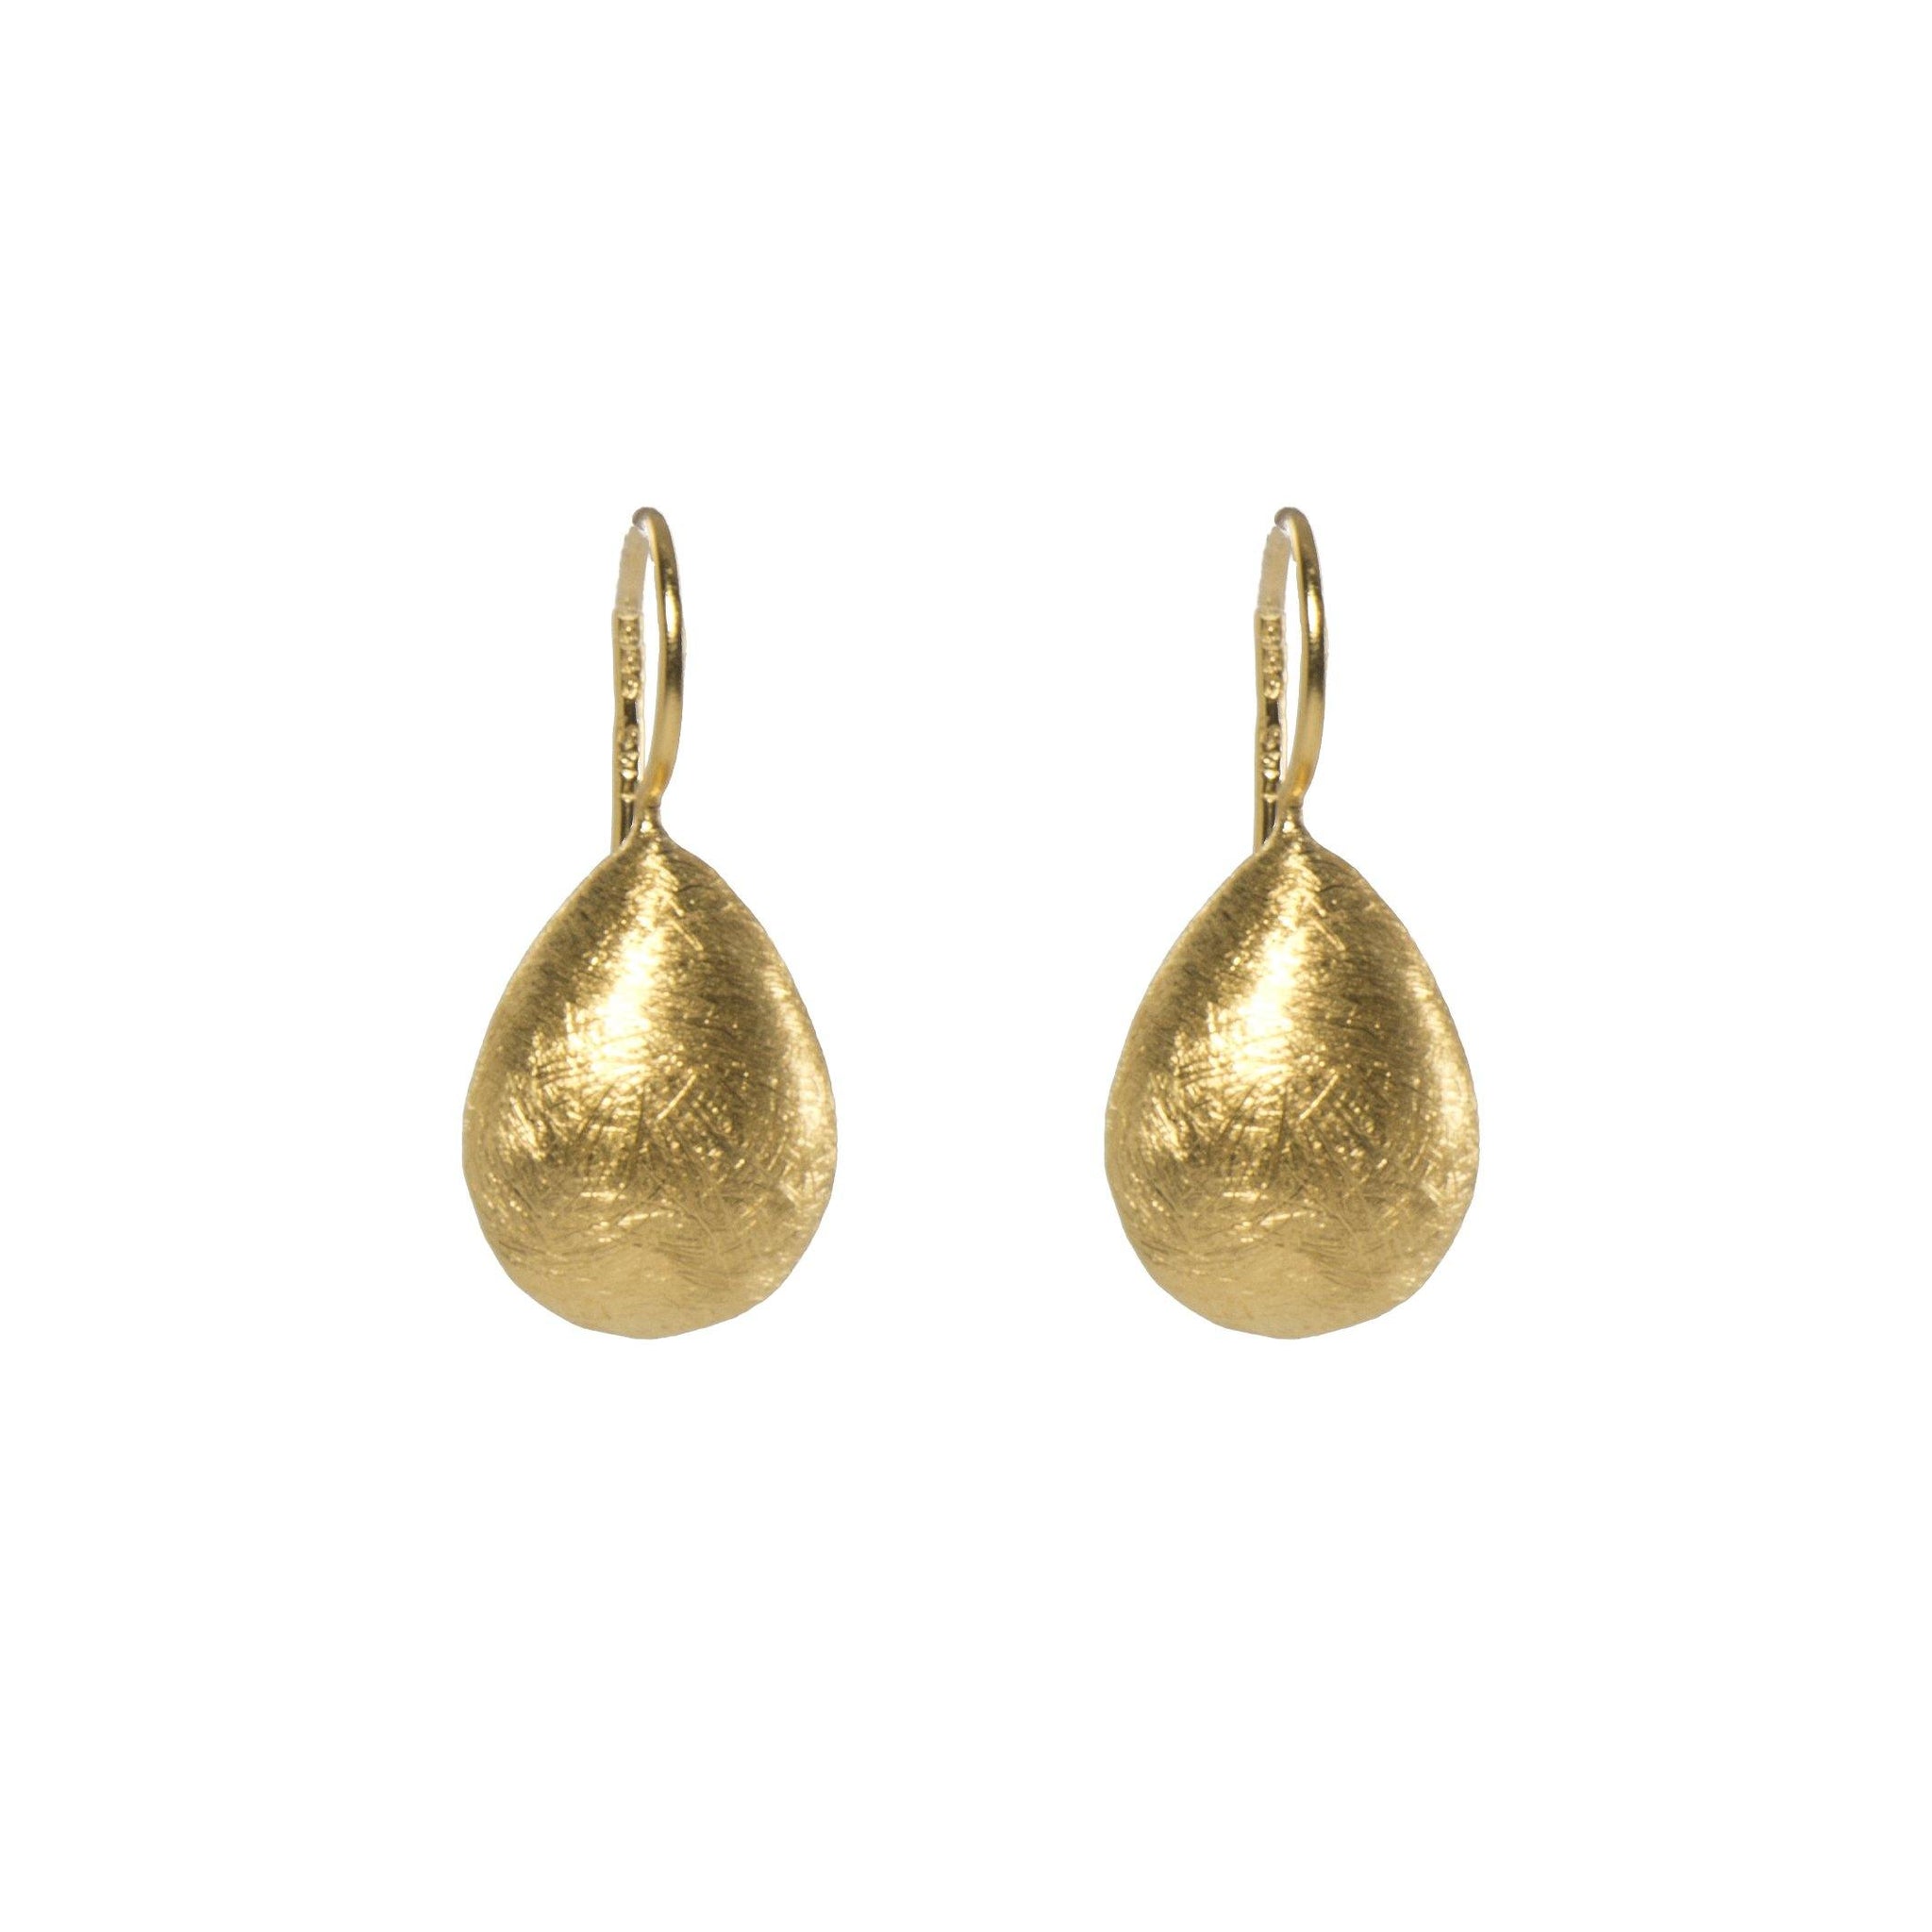 DROP EARRINGS FAIR TRADE 24K GOLD VERMEIL - Joyla Jewelry